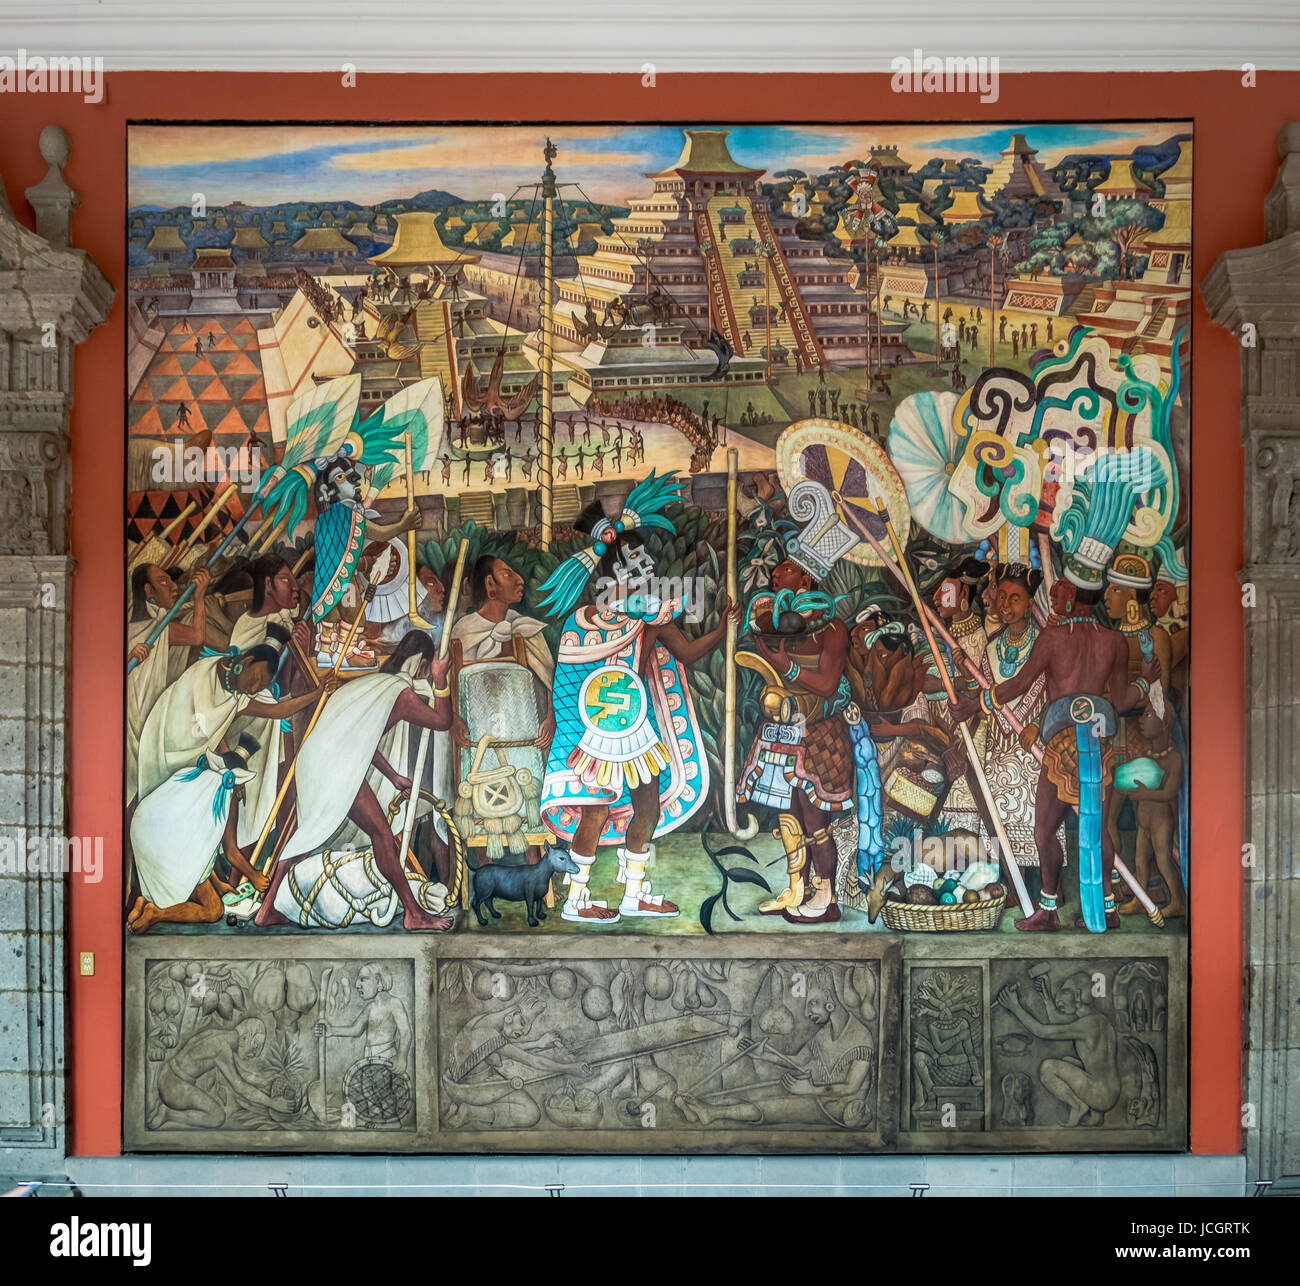 Der Korridor des National Palace mit der berühmten Wandbild 'The totonakischen Zivilisation' von Diego Rivera - Mexiko-Stadt, Mexiko Stockfoto